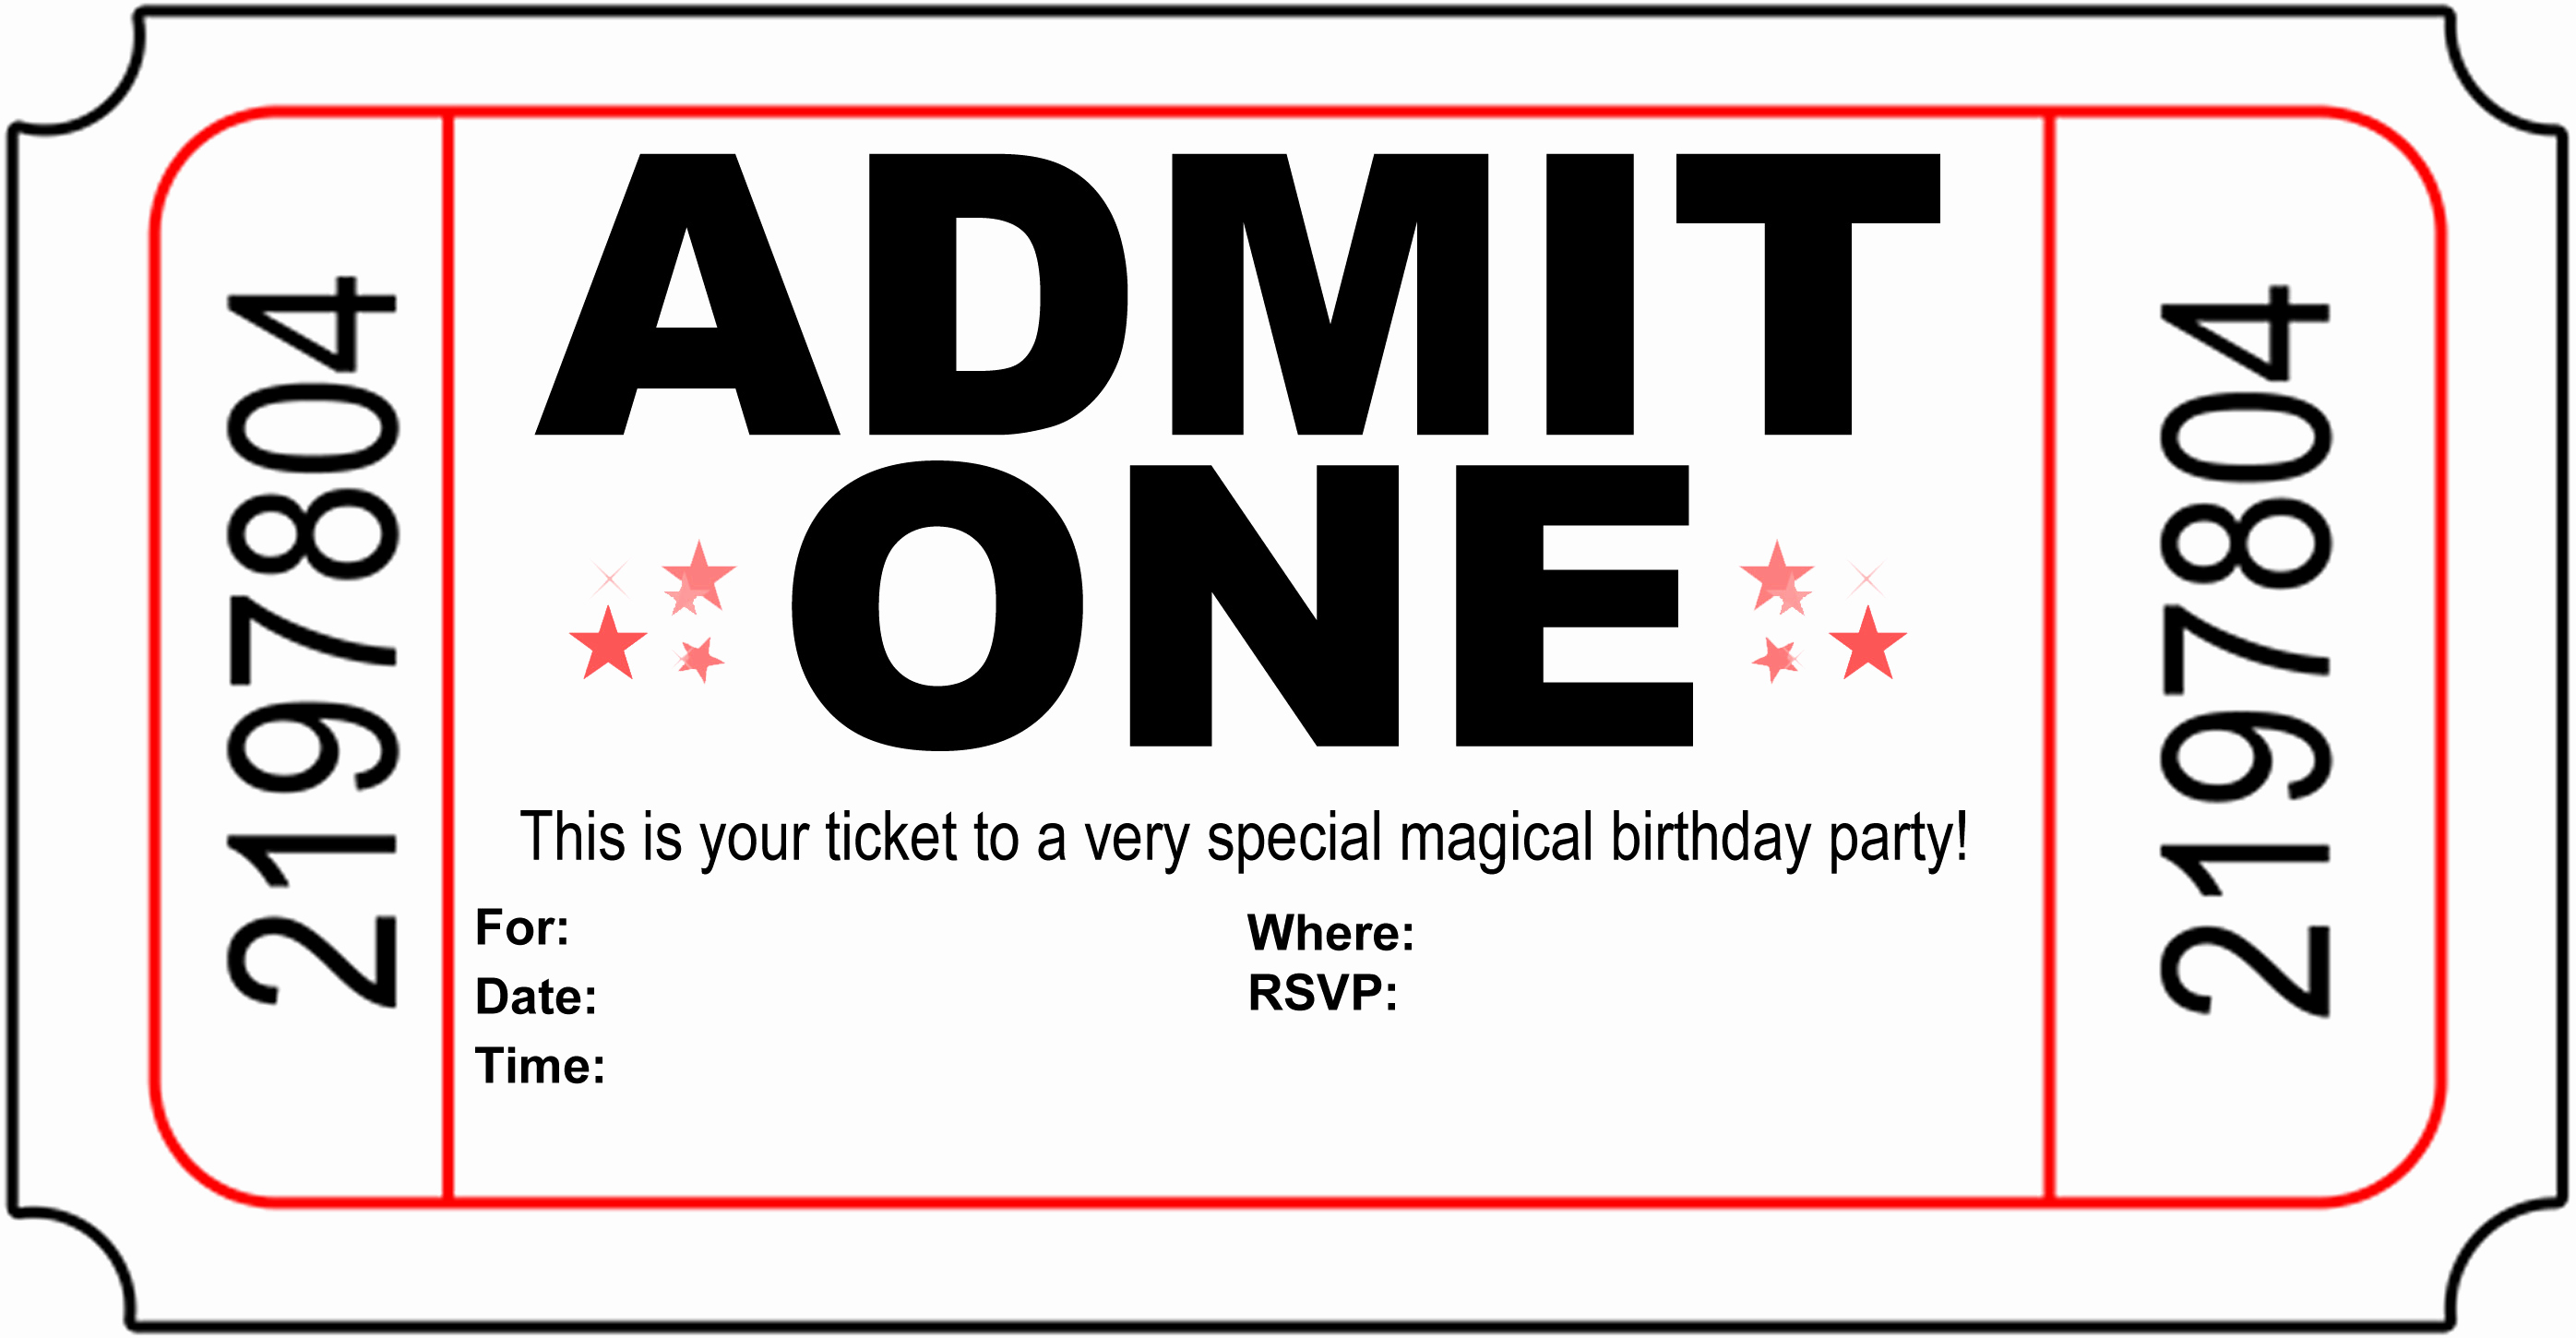 Free Anniversary Invitation Templates Unique Free Carnival Ticket Invitation Template Download Free